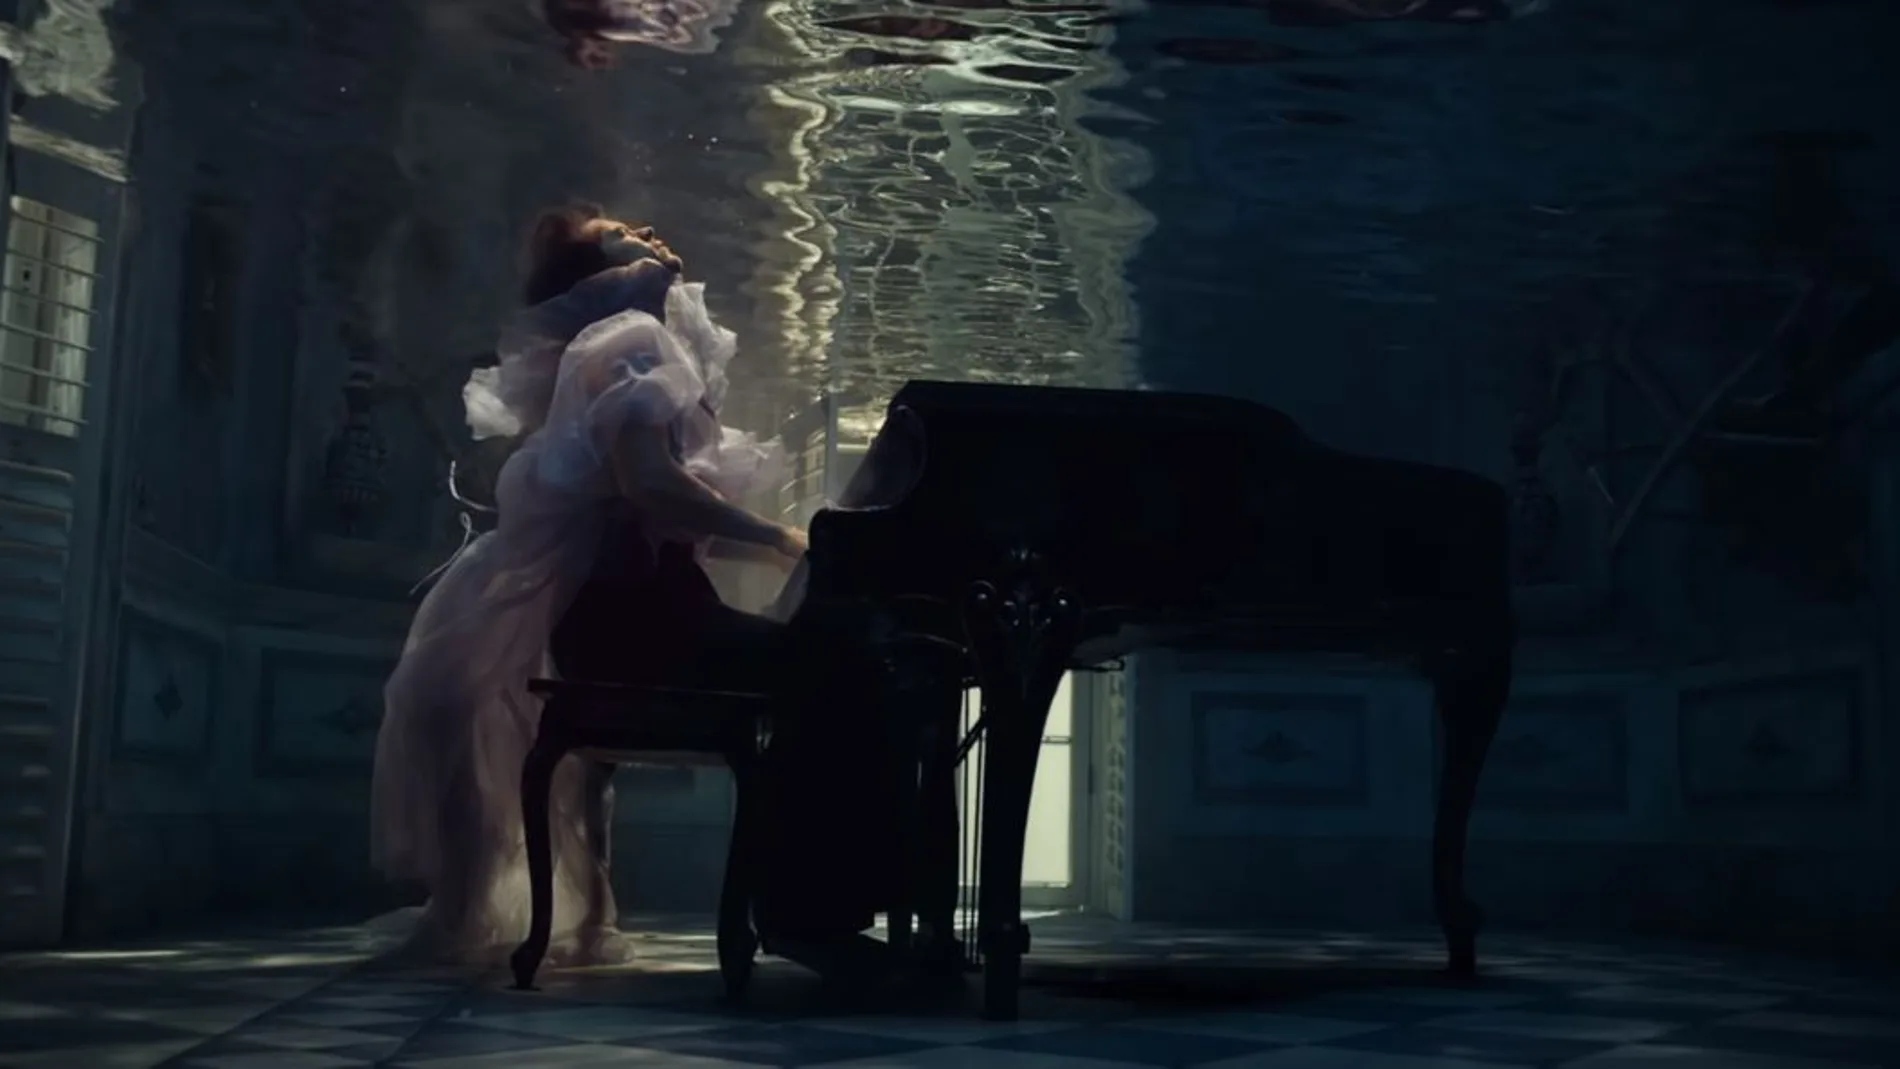 Imagen del videoclip "Falling"